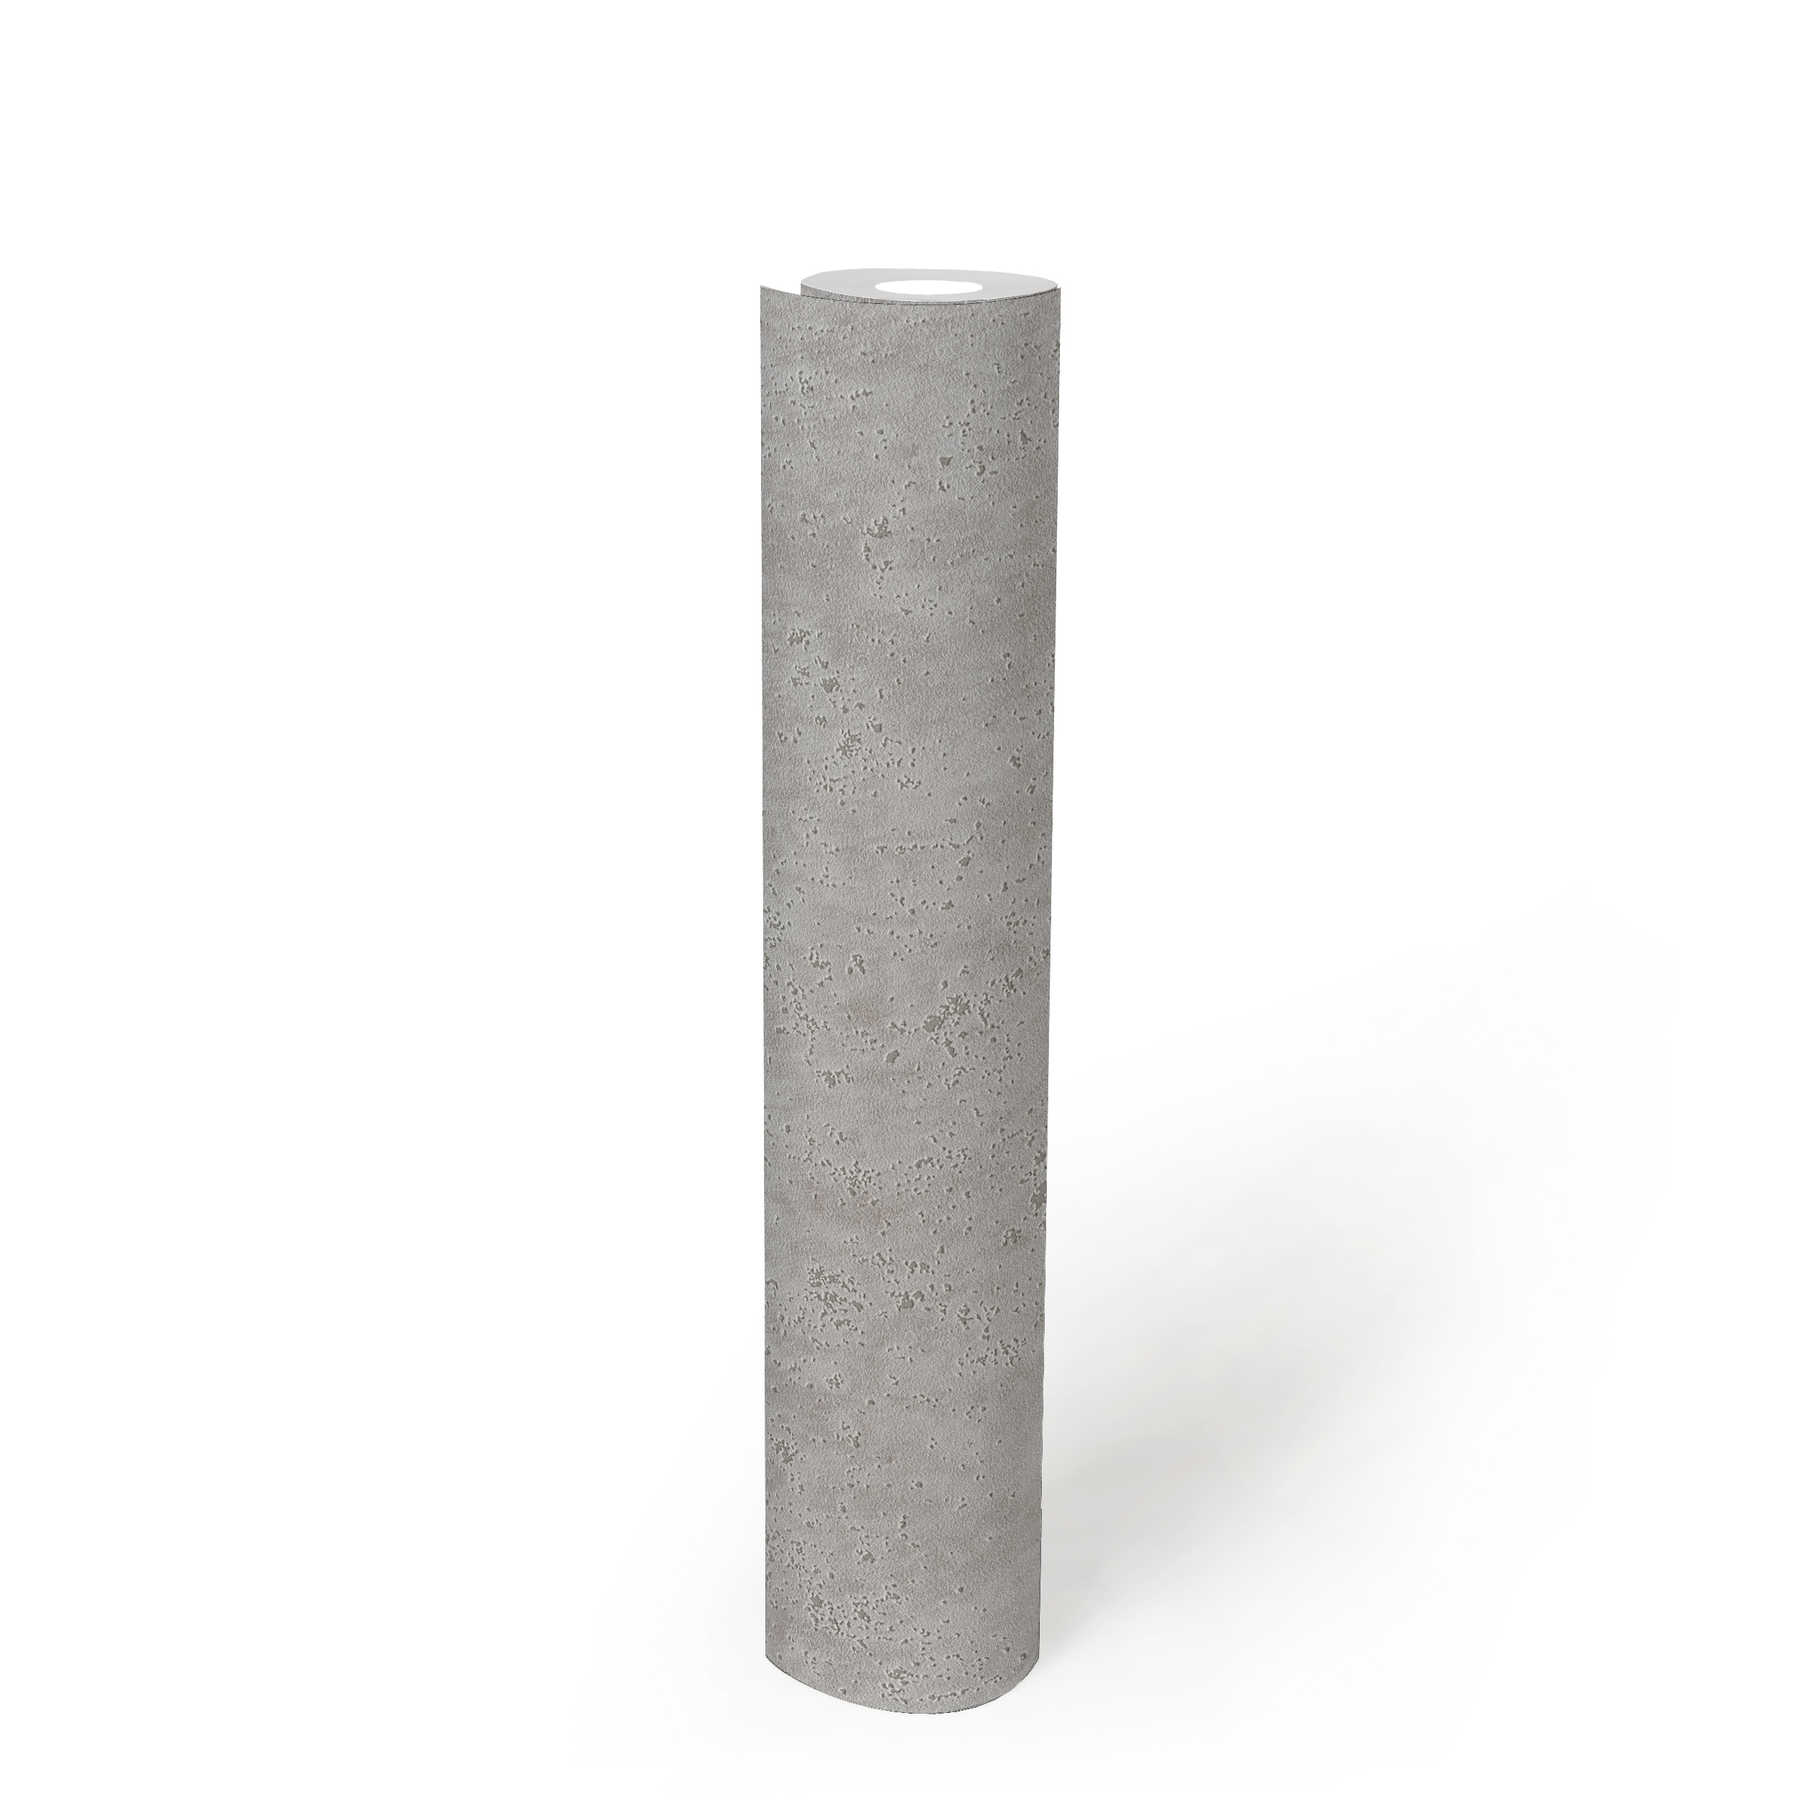             papel pintado con aspecto de yeso con textura de superficie rugosa - gris
        